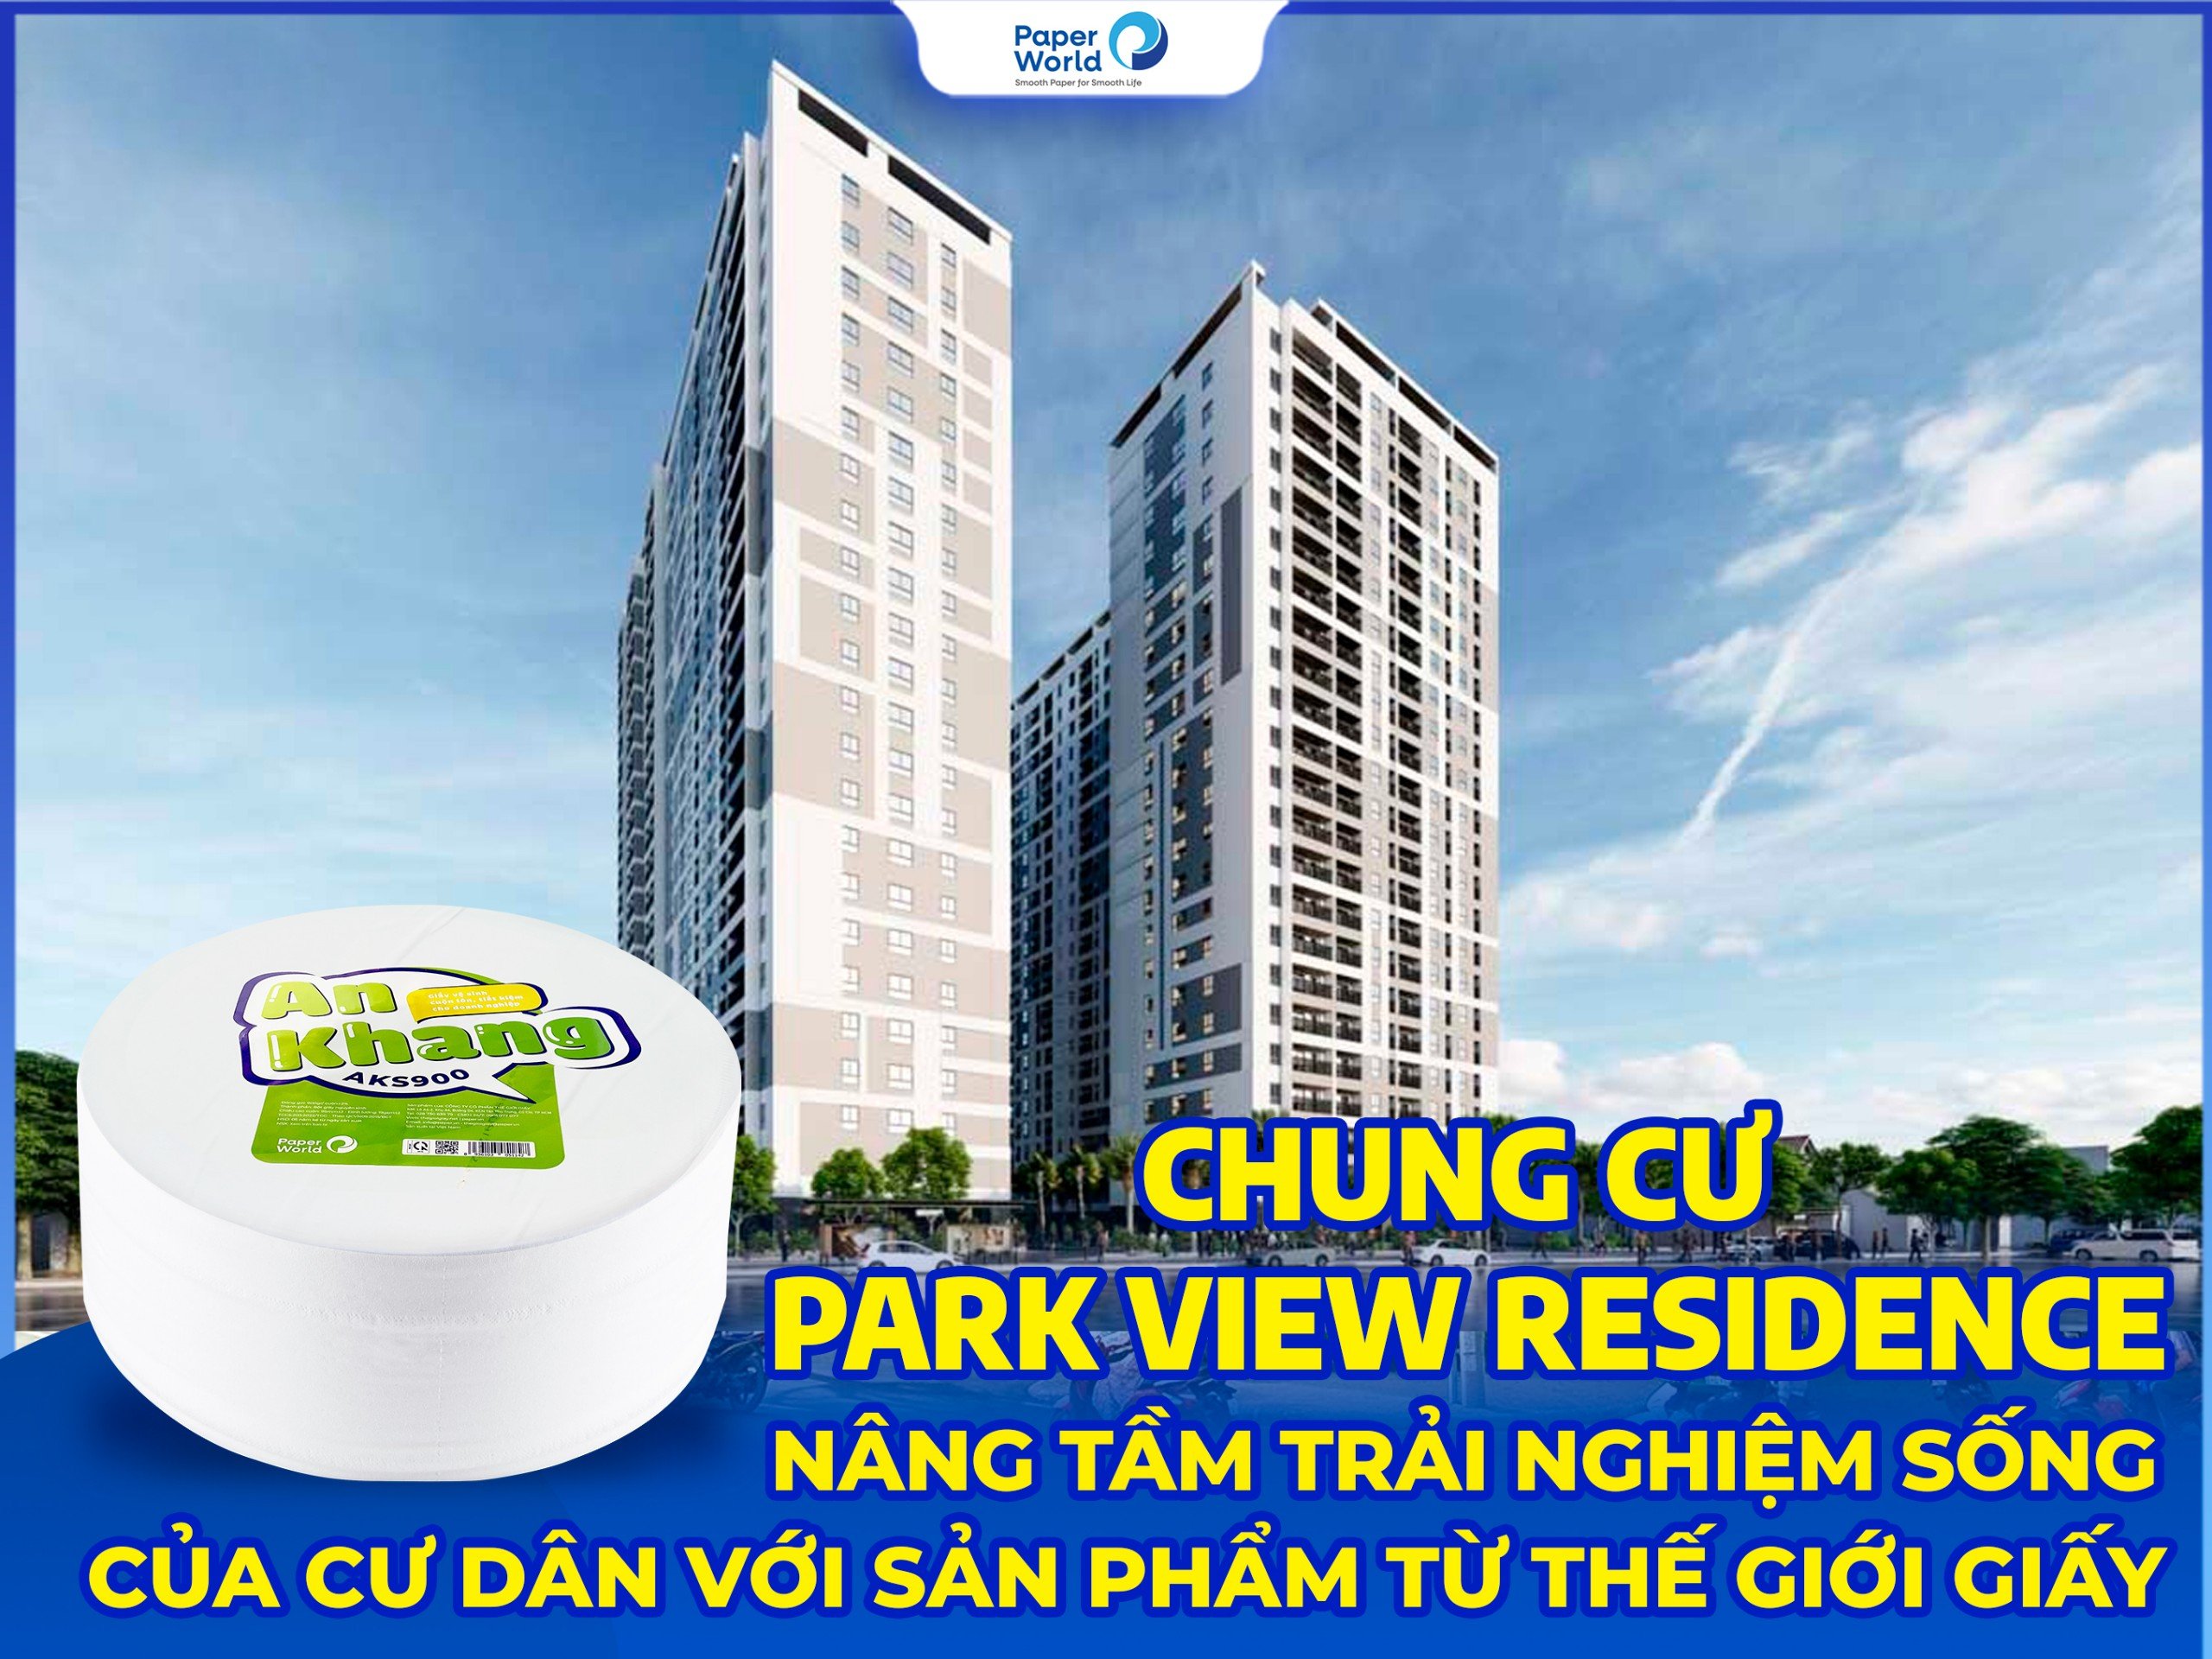 Chung Cư Park View Residence Nâng Tầm Trải Nghiệm Sống Của Cư Dân Với Sản Phẩm Từ Thế Giới Giấy